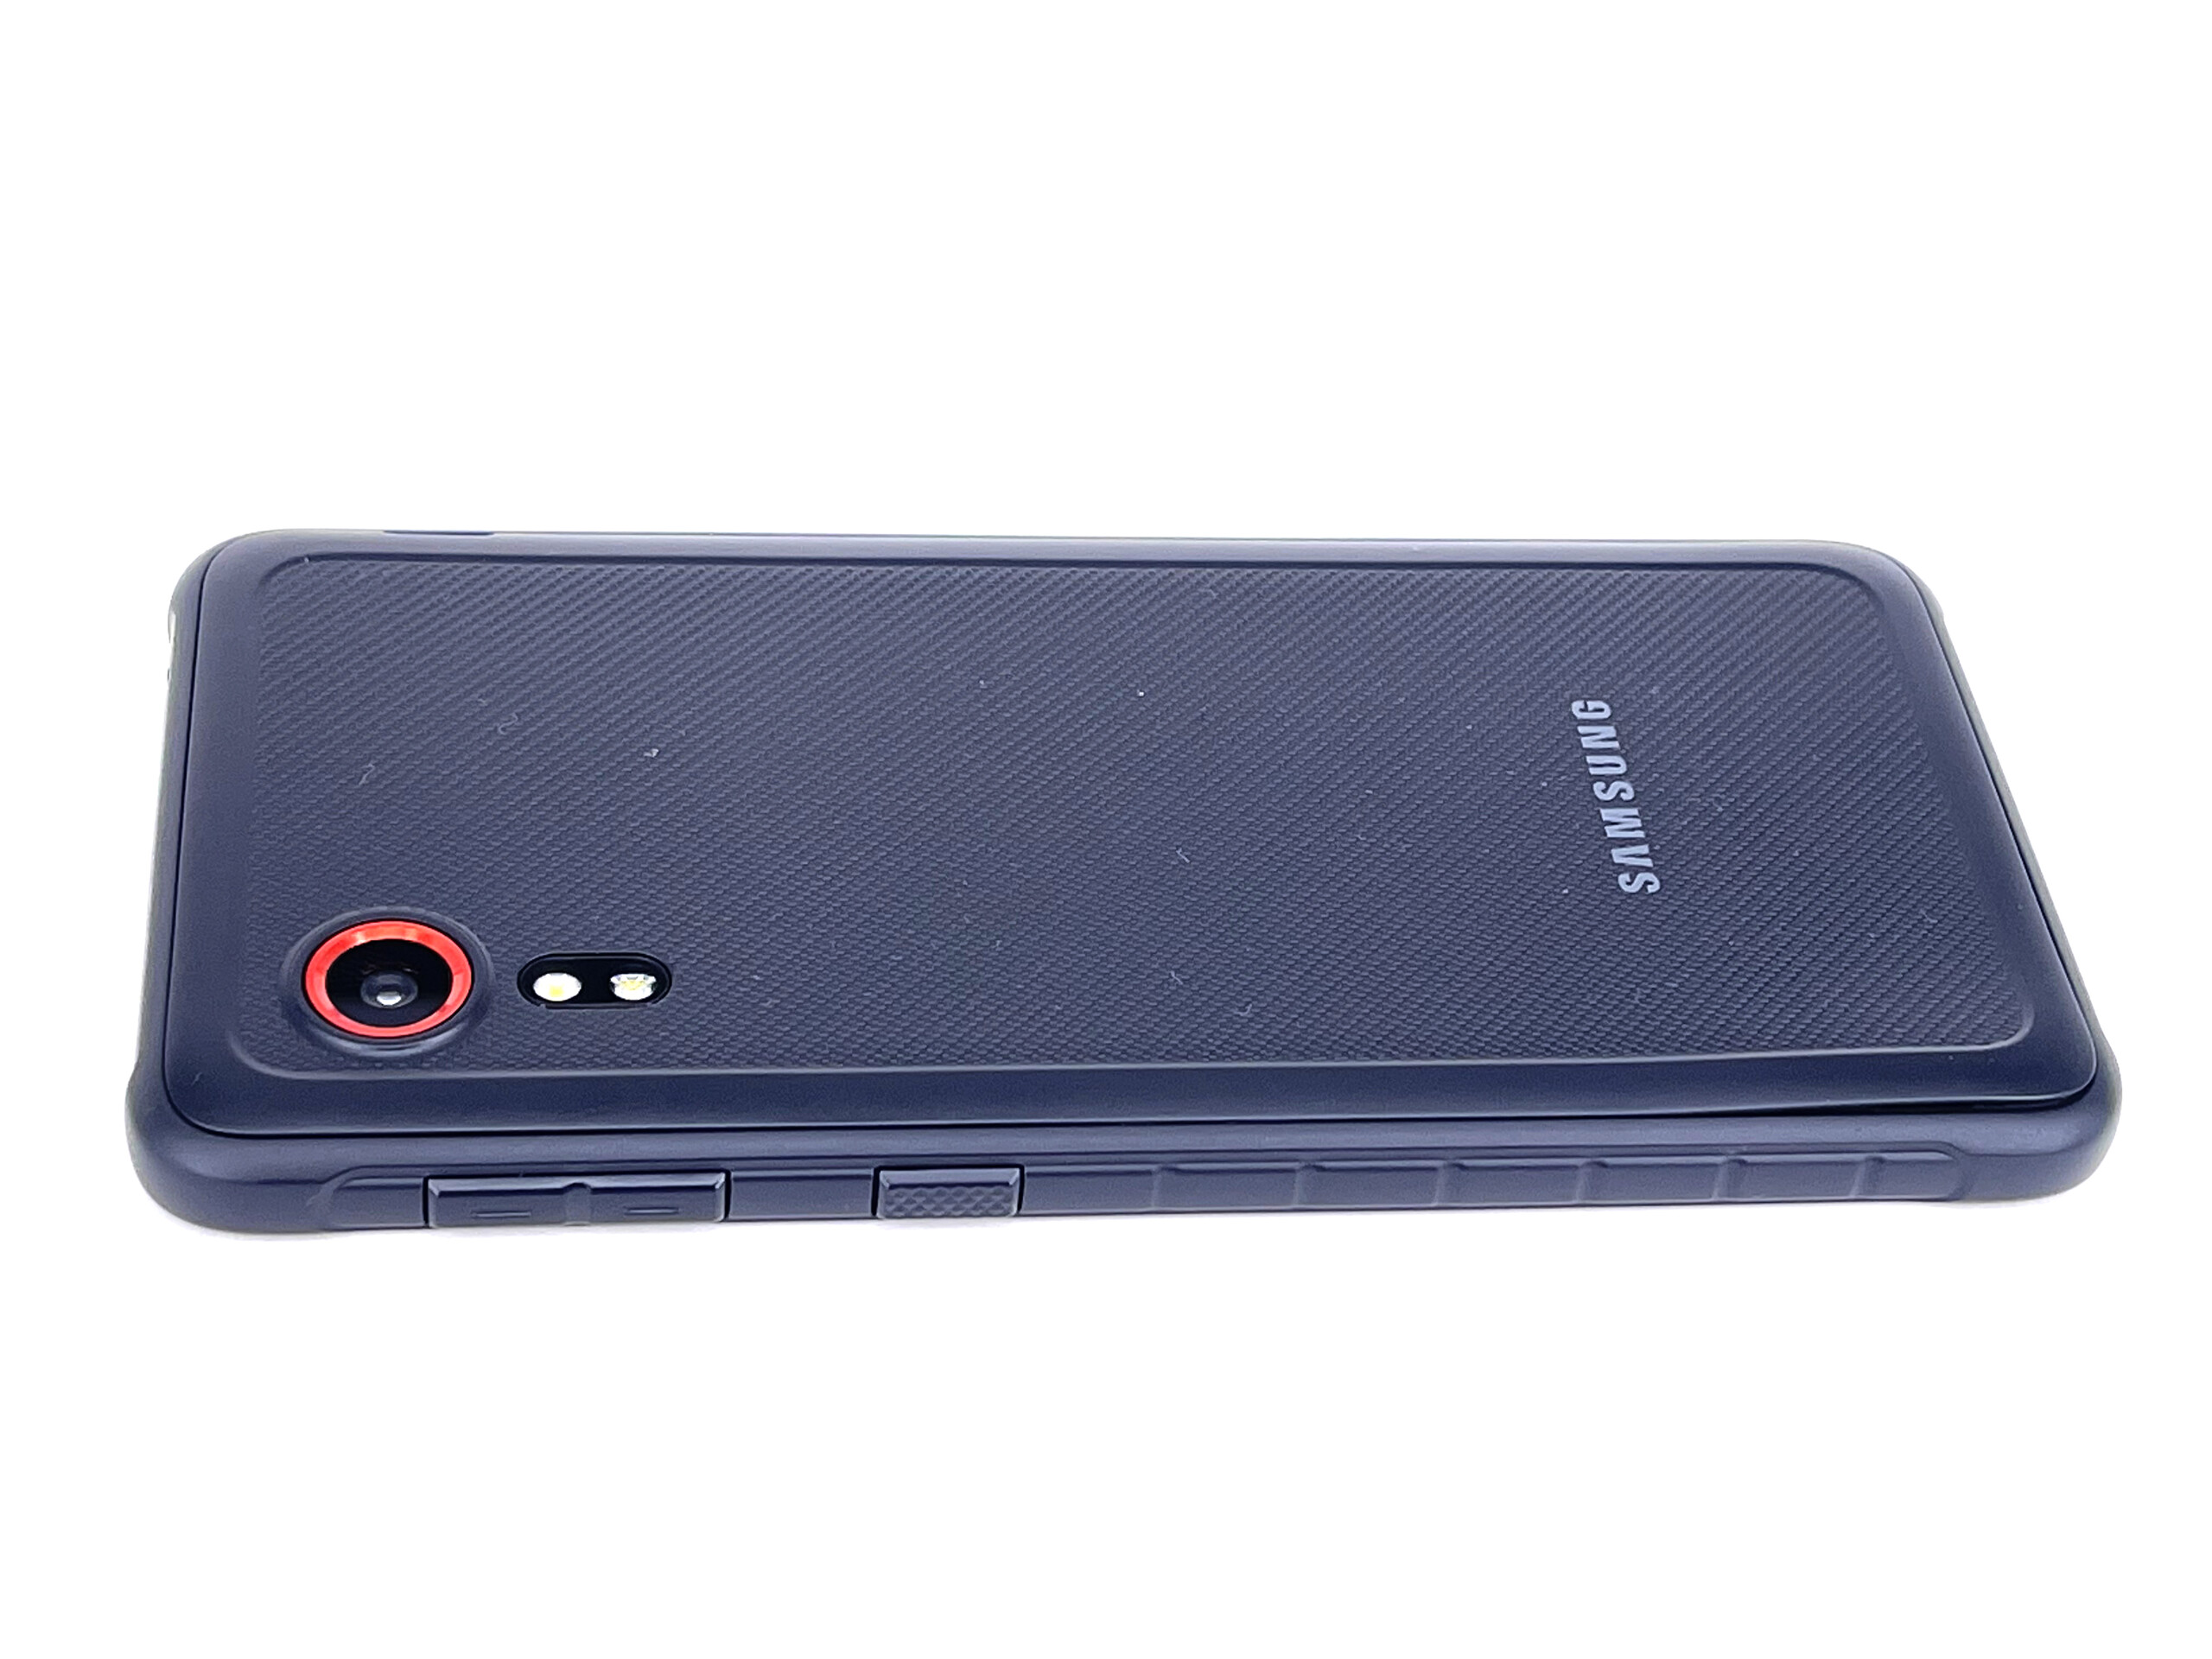 Samsung Galaxy XCover 5 Smartphone Review - Pequeñas mejoras para el  smartphone robusto -  Analisis